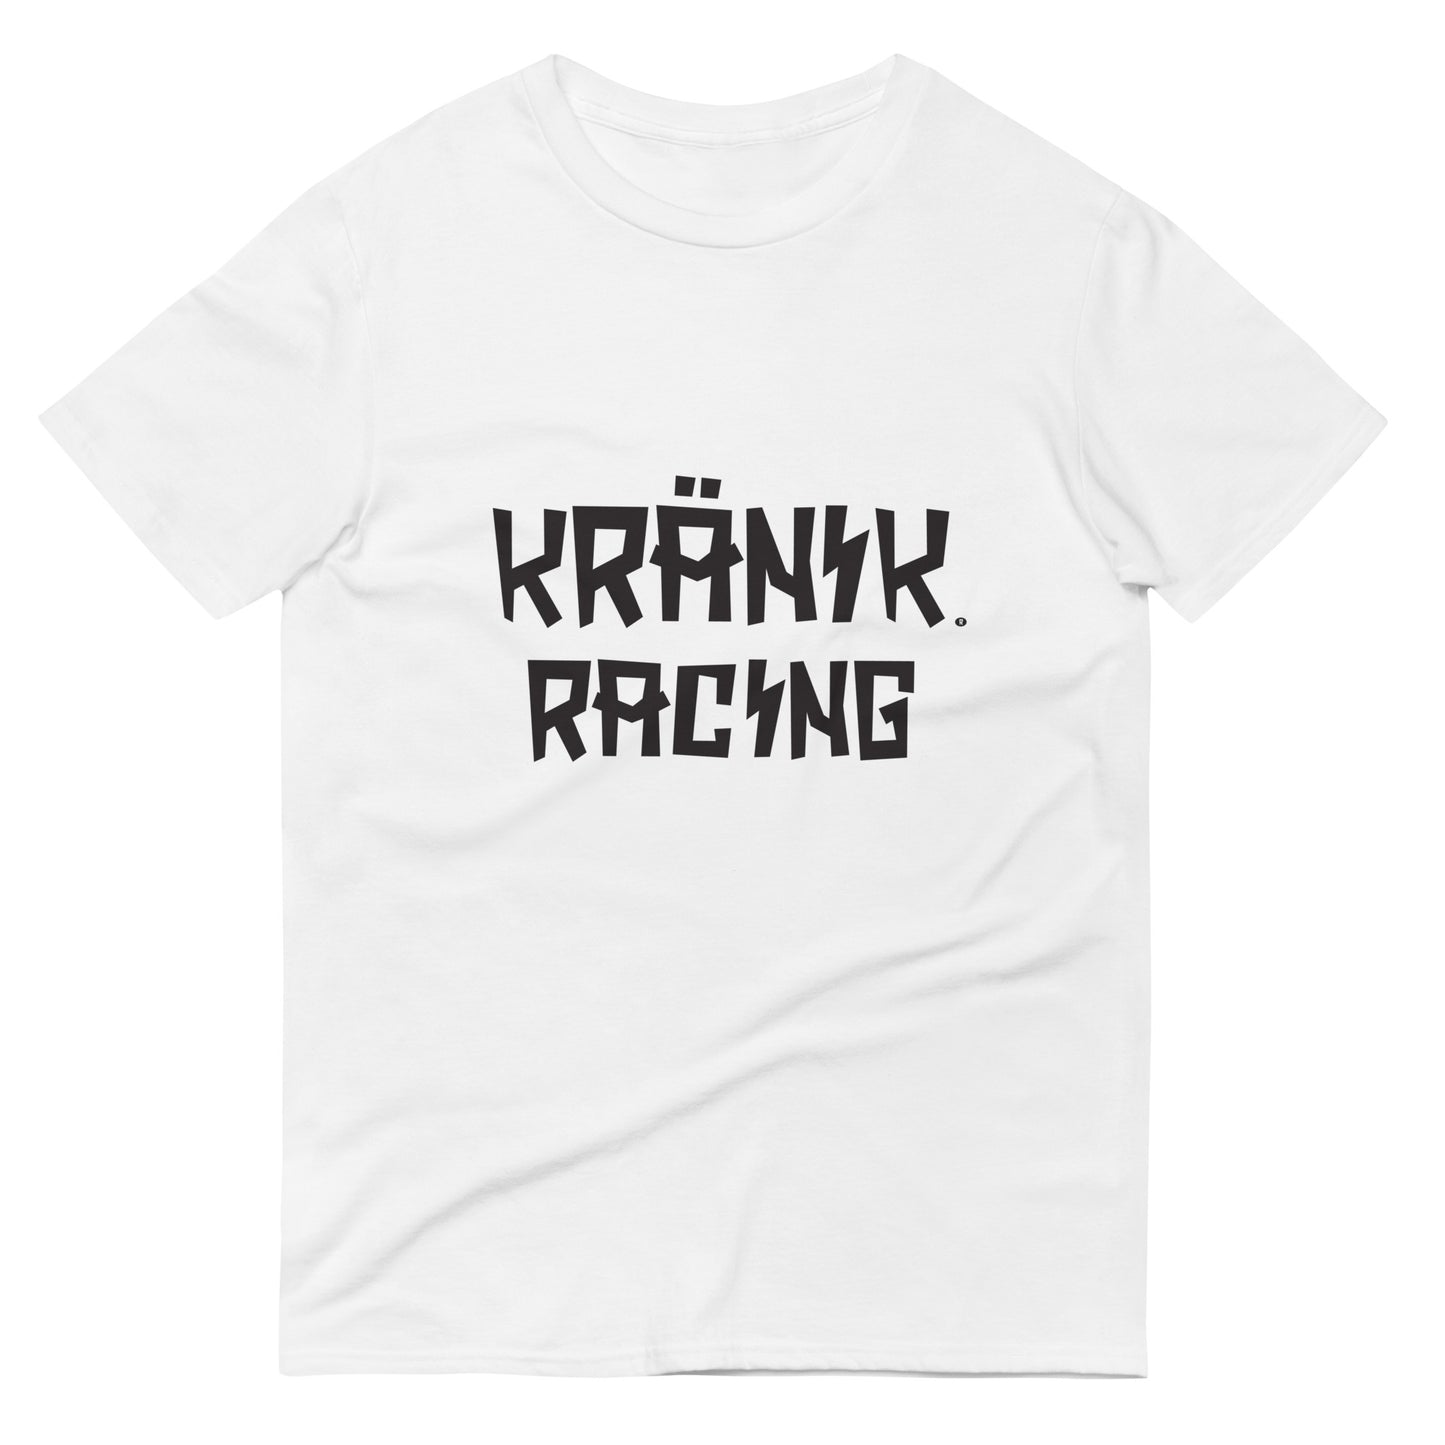 Kranik Brand / T-Shirt / Moto X Logo / Kranik Racing Logo